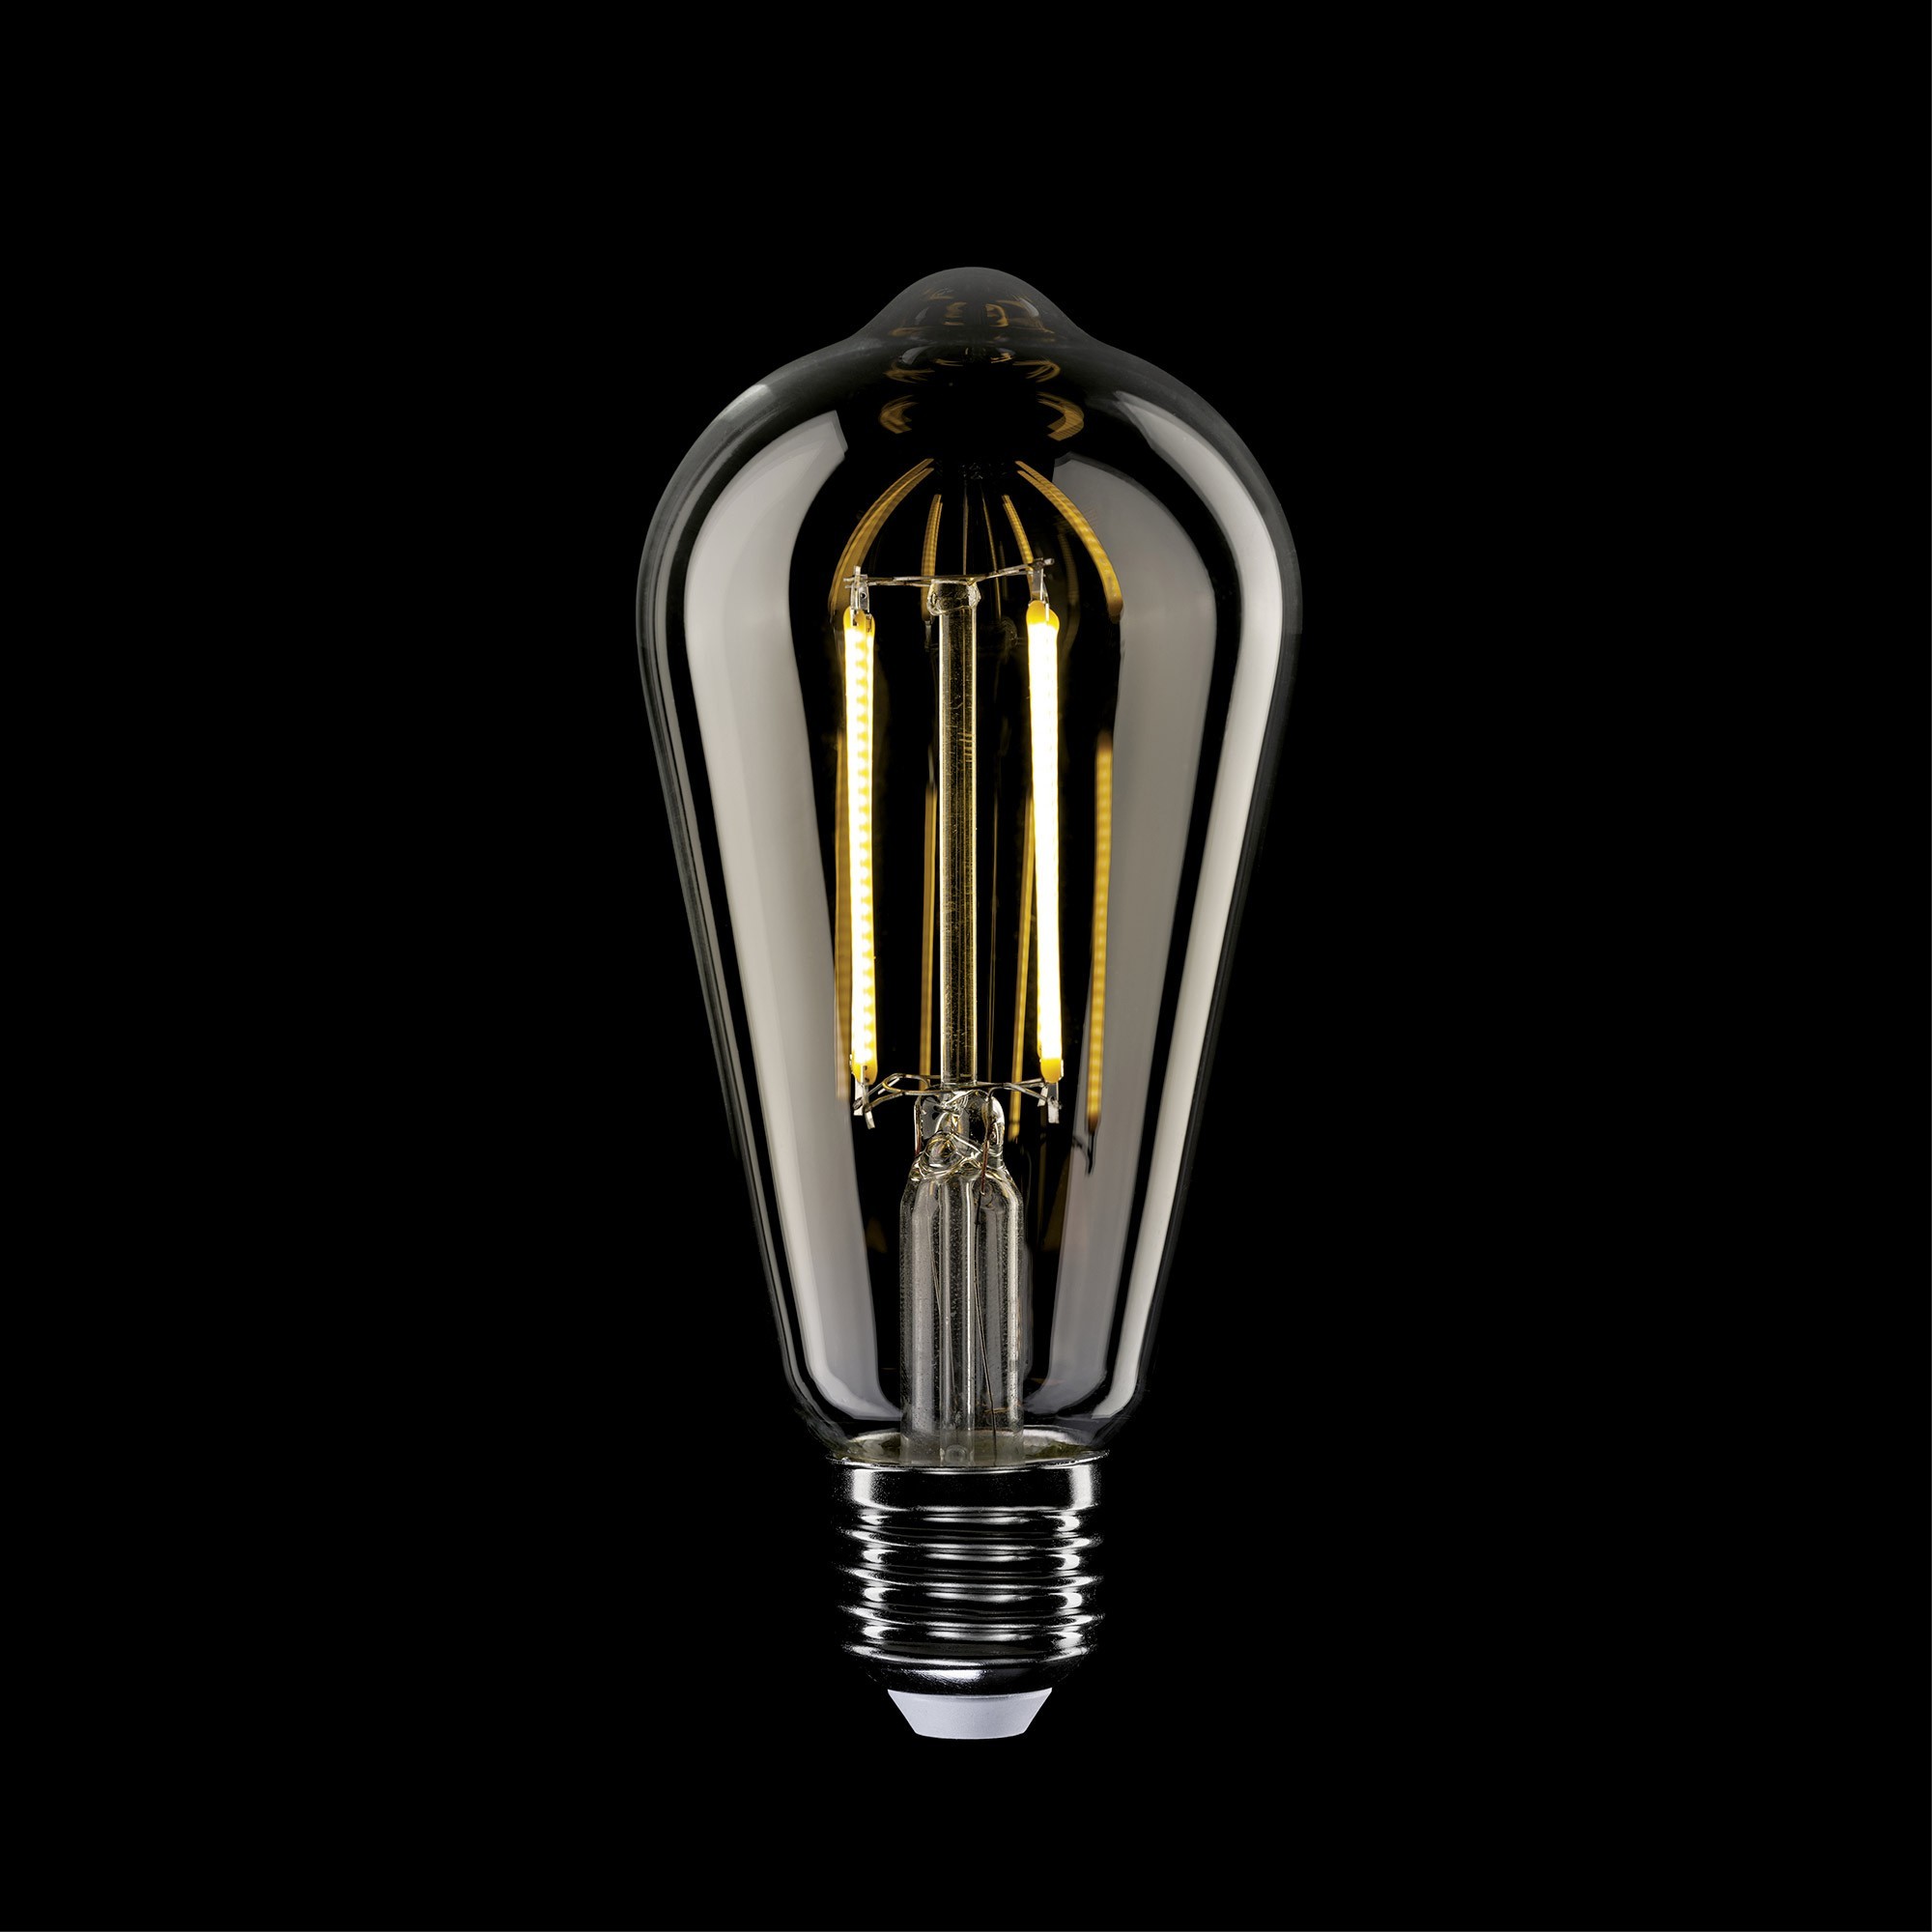 T02 - ST64 LED Light Bulb, E27, 7W, 2700K, 806Lm, clear glass